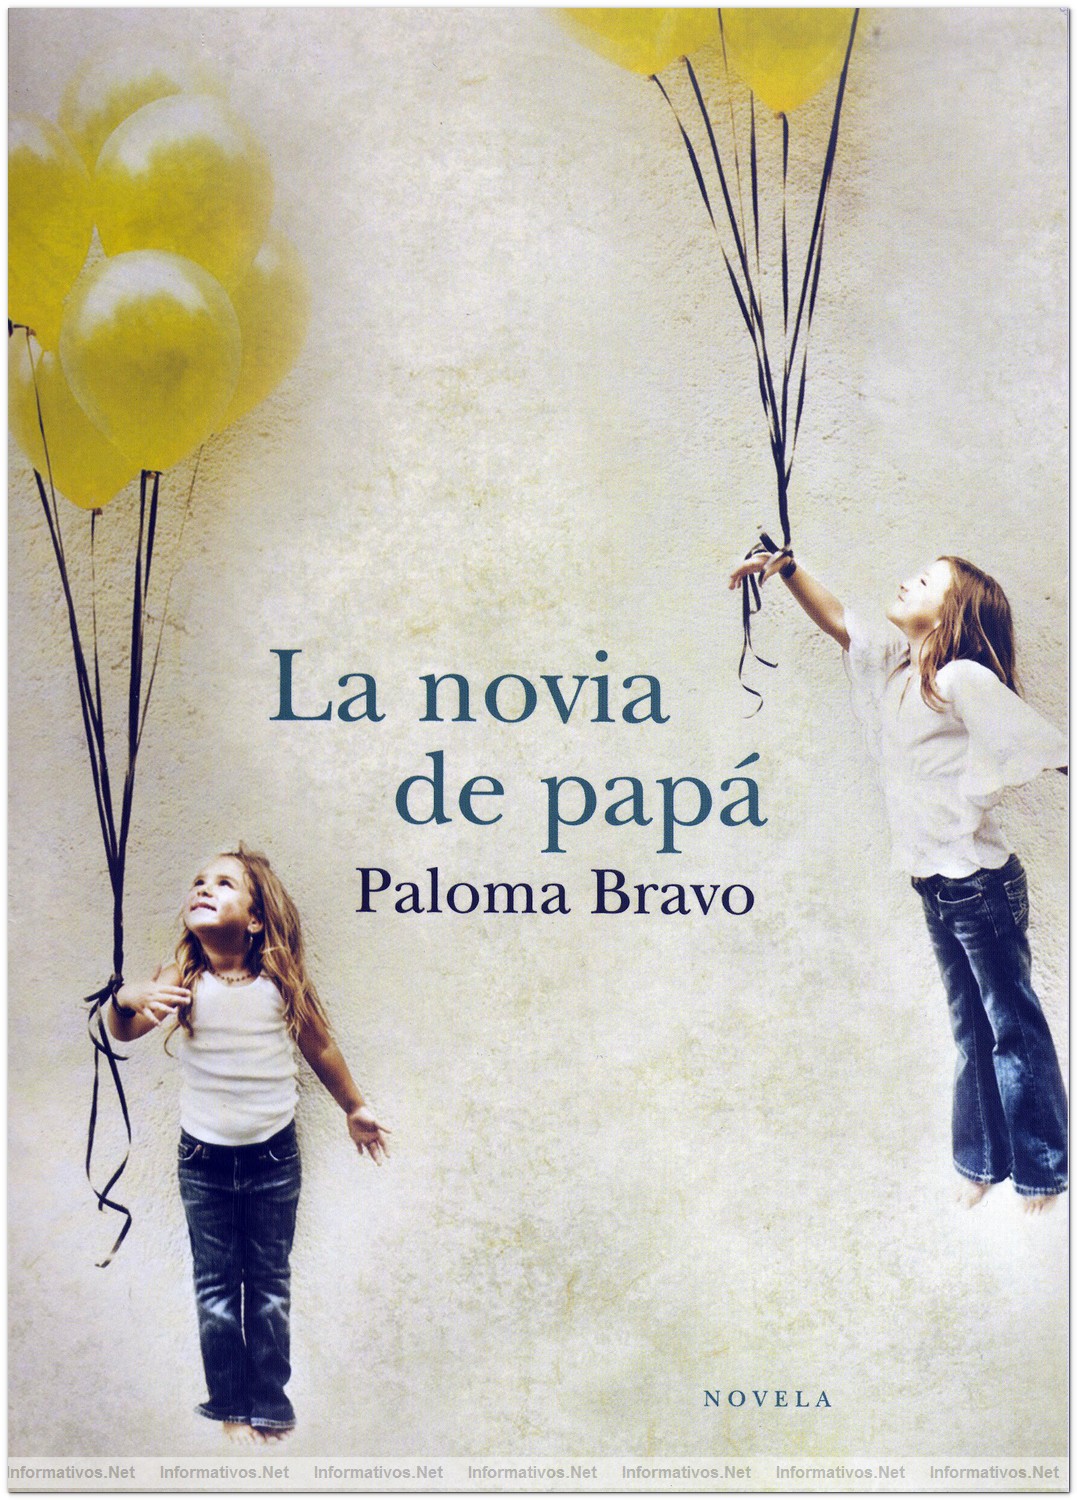 Portada del libro "La novia de papá" de Paloma Bravo